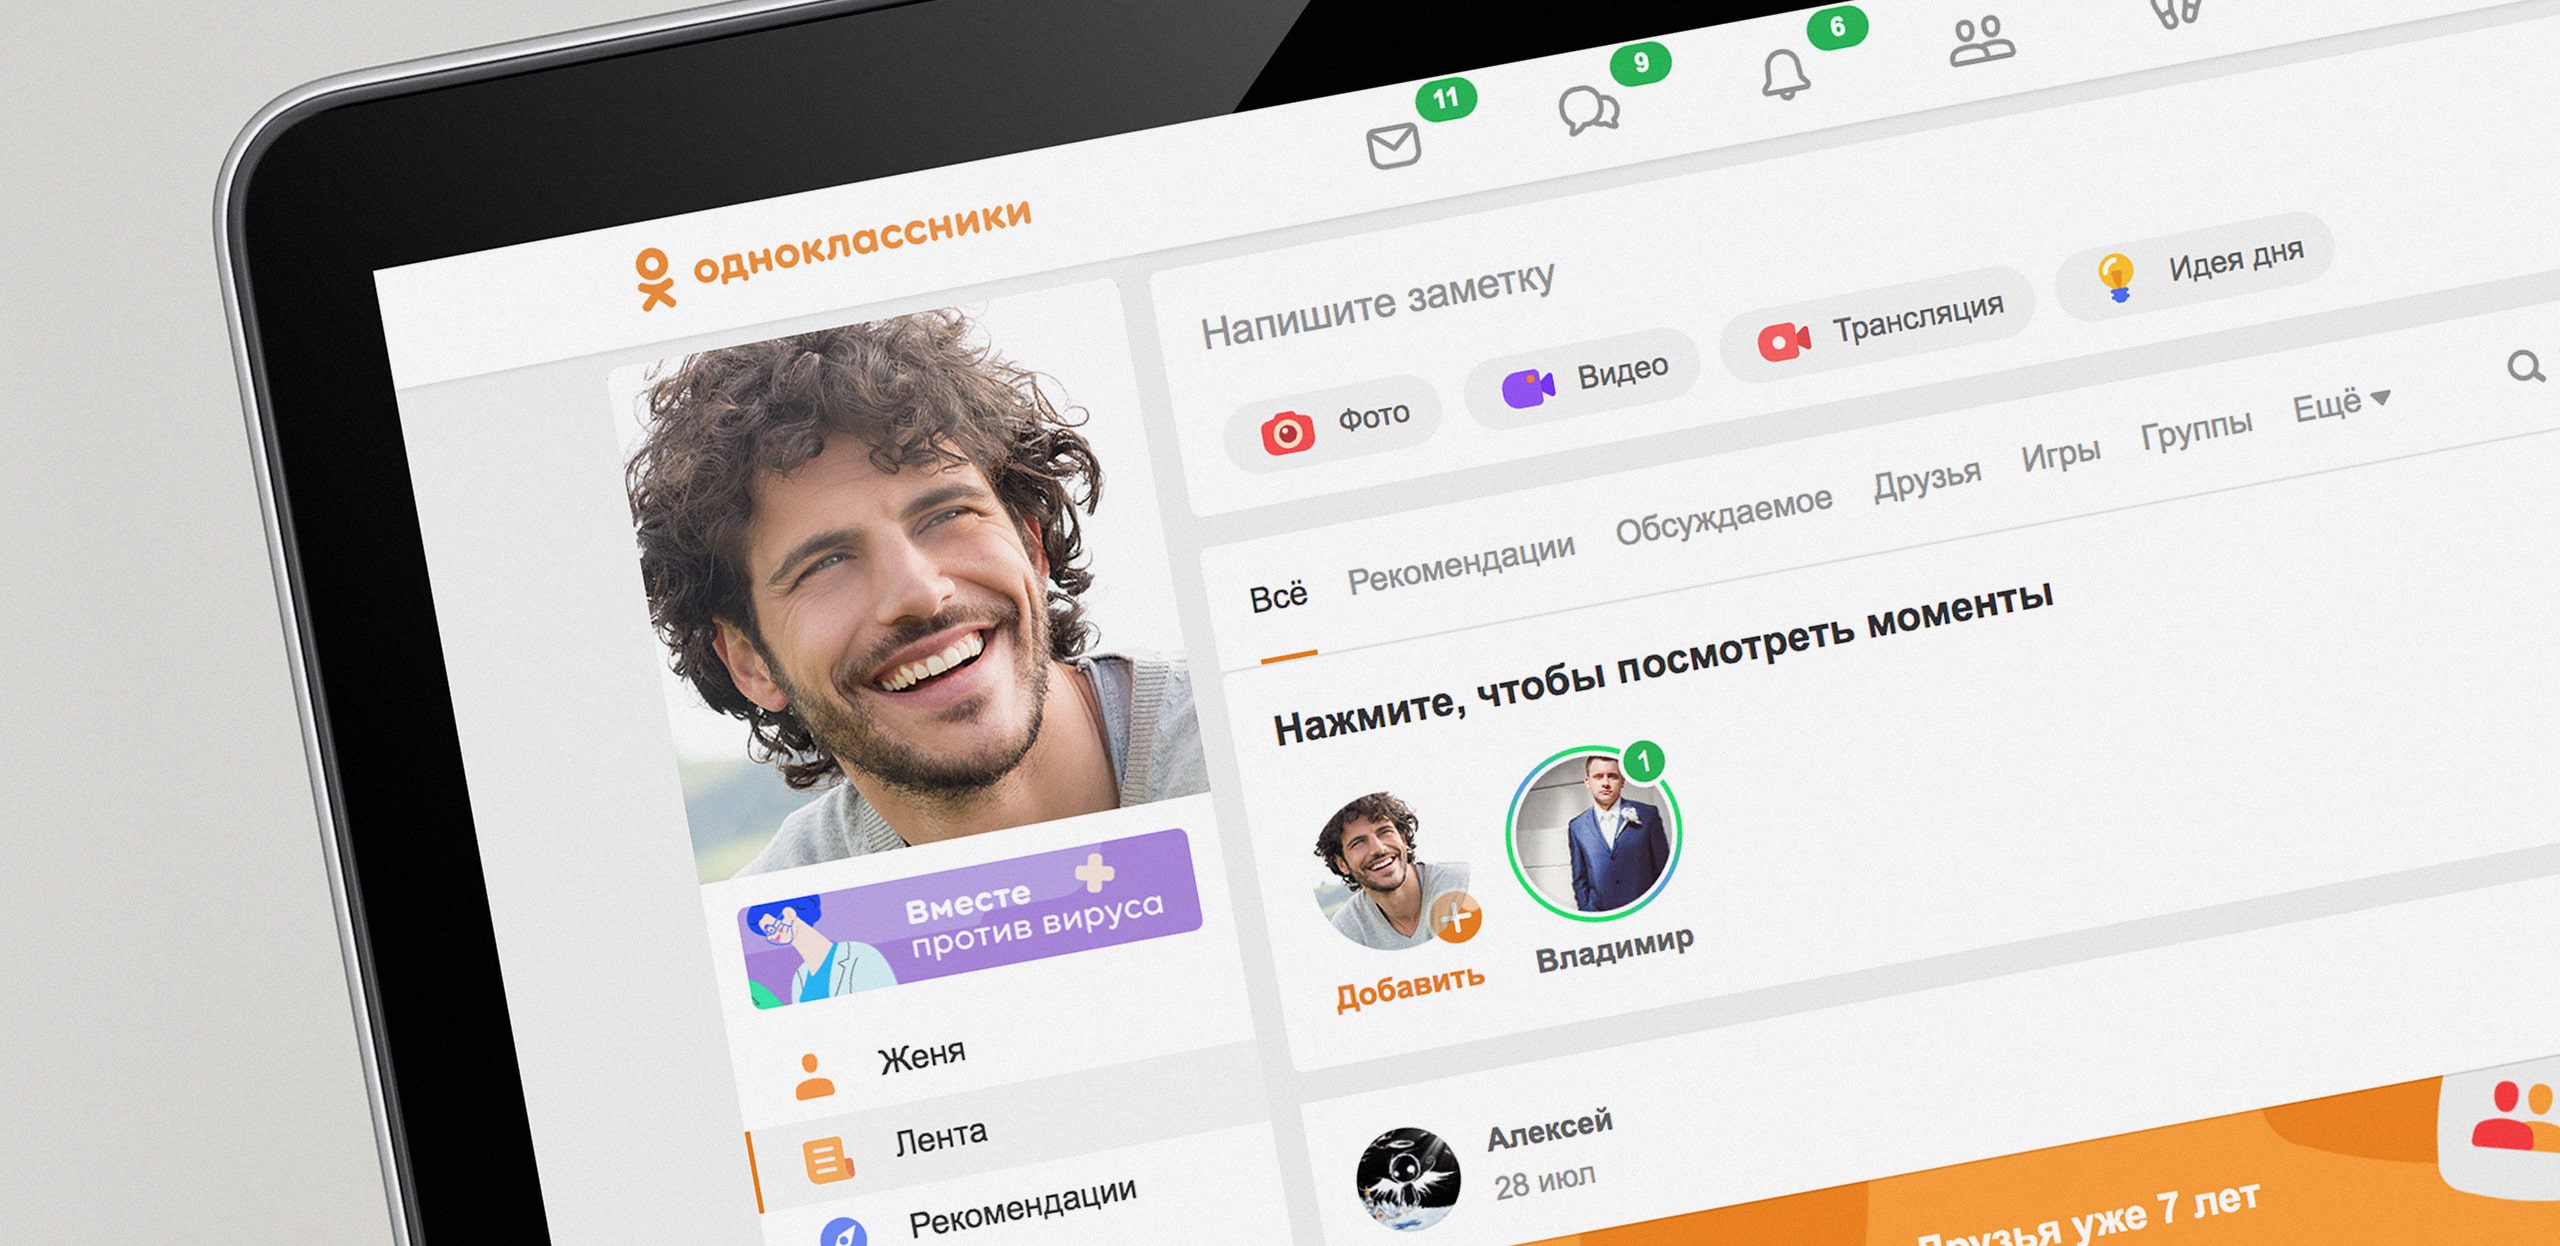 Не открываются фото в Одноклассниках: что делать? | FAQ about OK